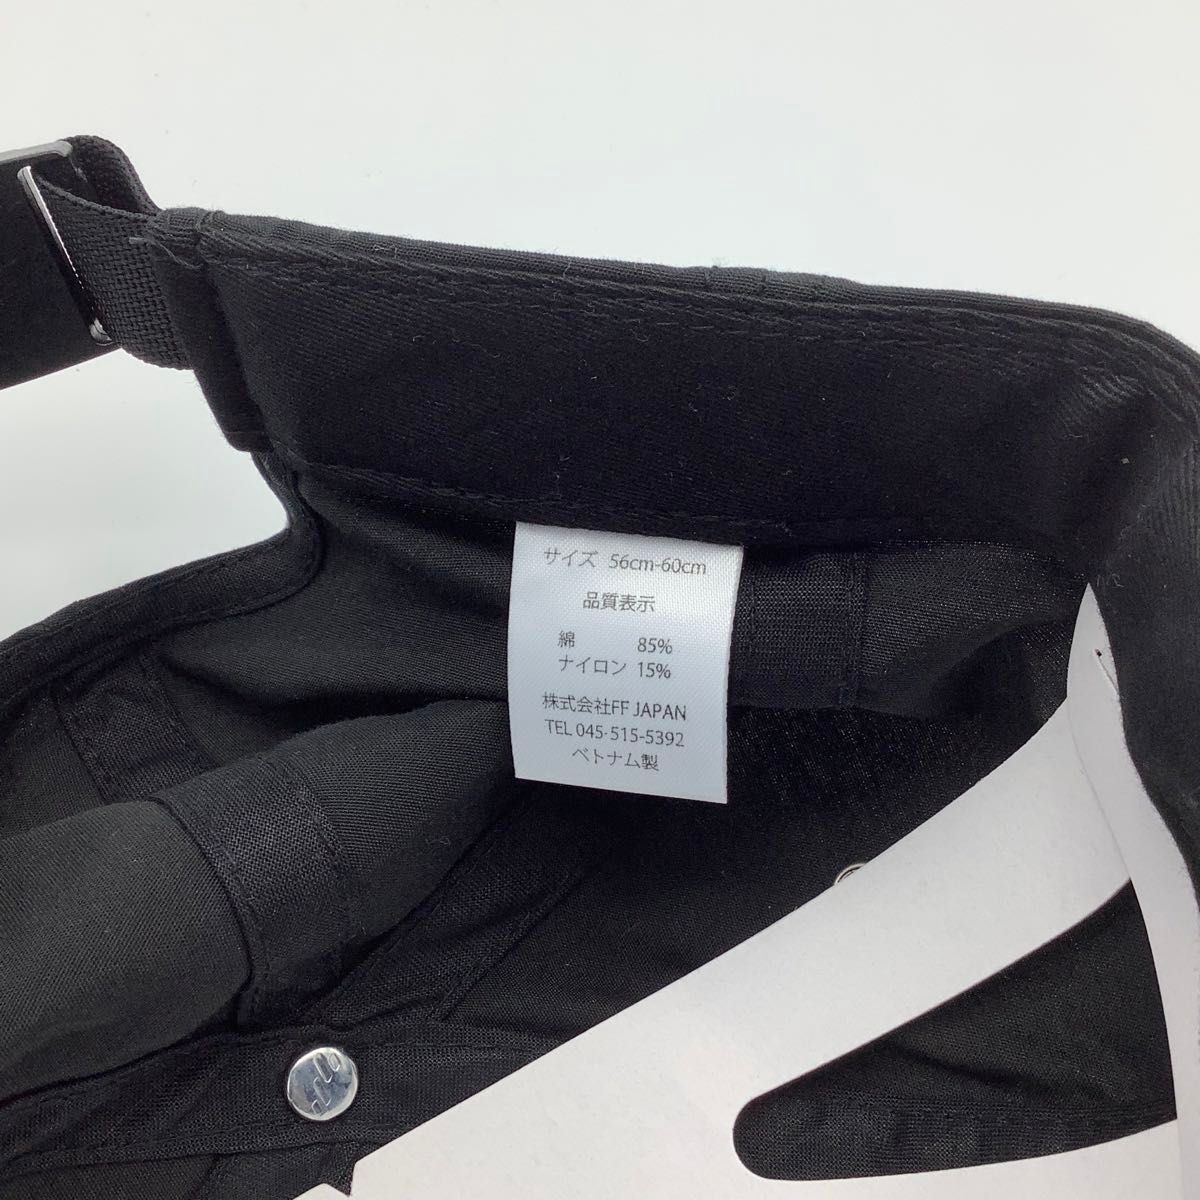 【新品】日本限定モデル フレックスフィット  Dad Capブラック ジェットキャップ 帽子 黒 ブラック